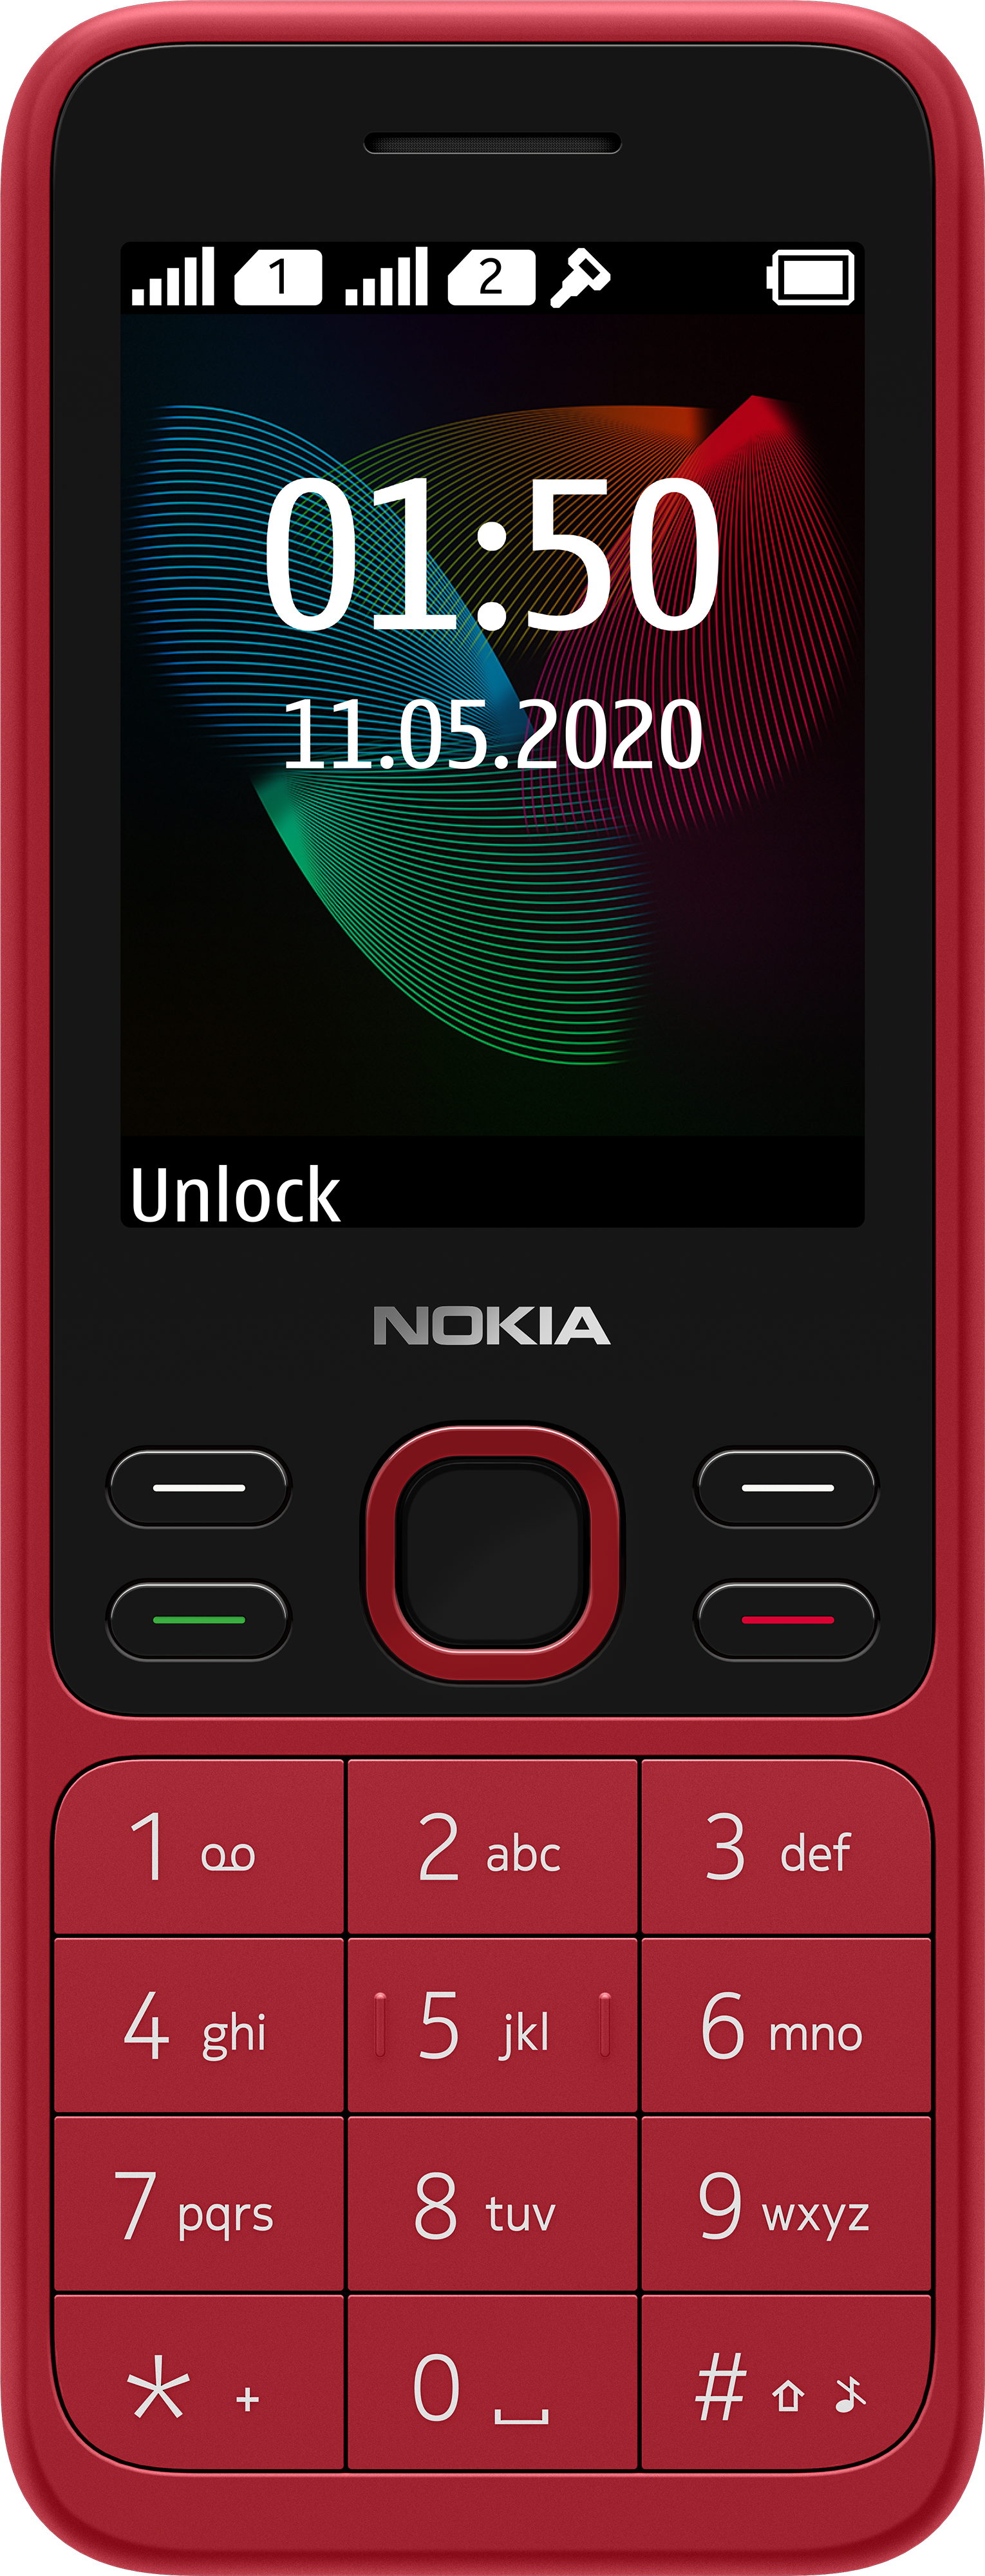 Với thiết kế đơn giản và tính năng ấn tượng, chiếc điện thoại Nokia 150 sẽ đáp ứng mọi nhu cầu của bạn. Điện thoại có thể giúp bạn giải trí, liên lạc và thực hiện các công việc cơ bản một cách nhanh chóng và dễ dàng.